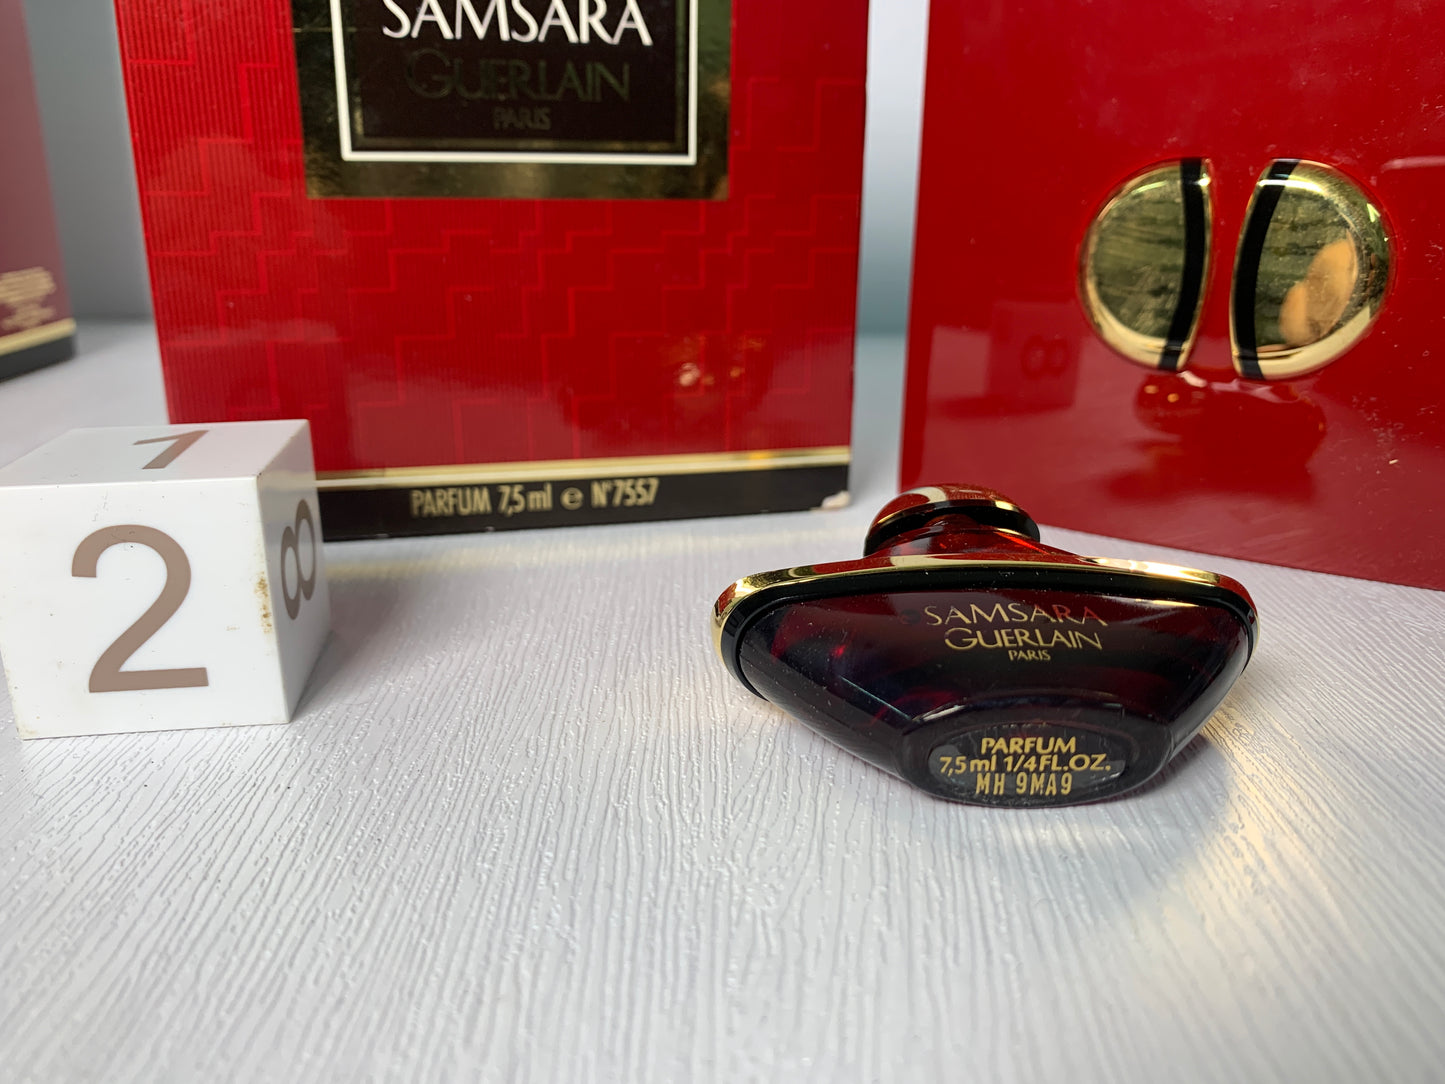 Rare guerlain samsara parfum perfume 7.5ml 1/4 oz 15ml 1/2 oz - 12DEC22